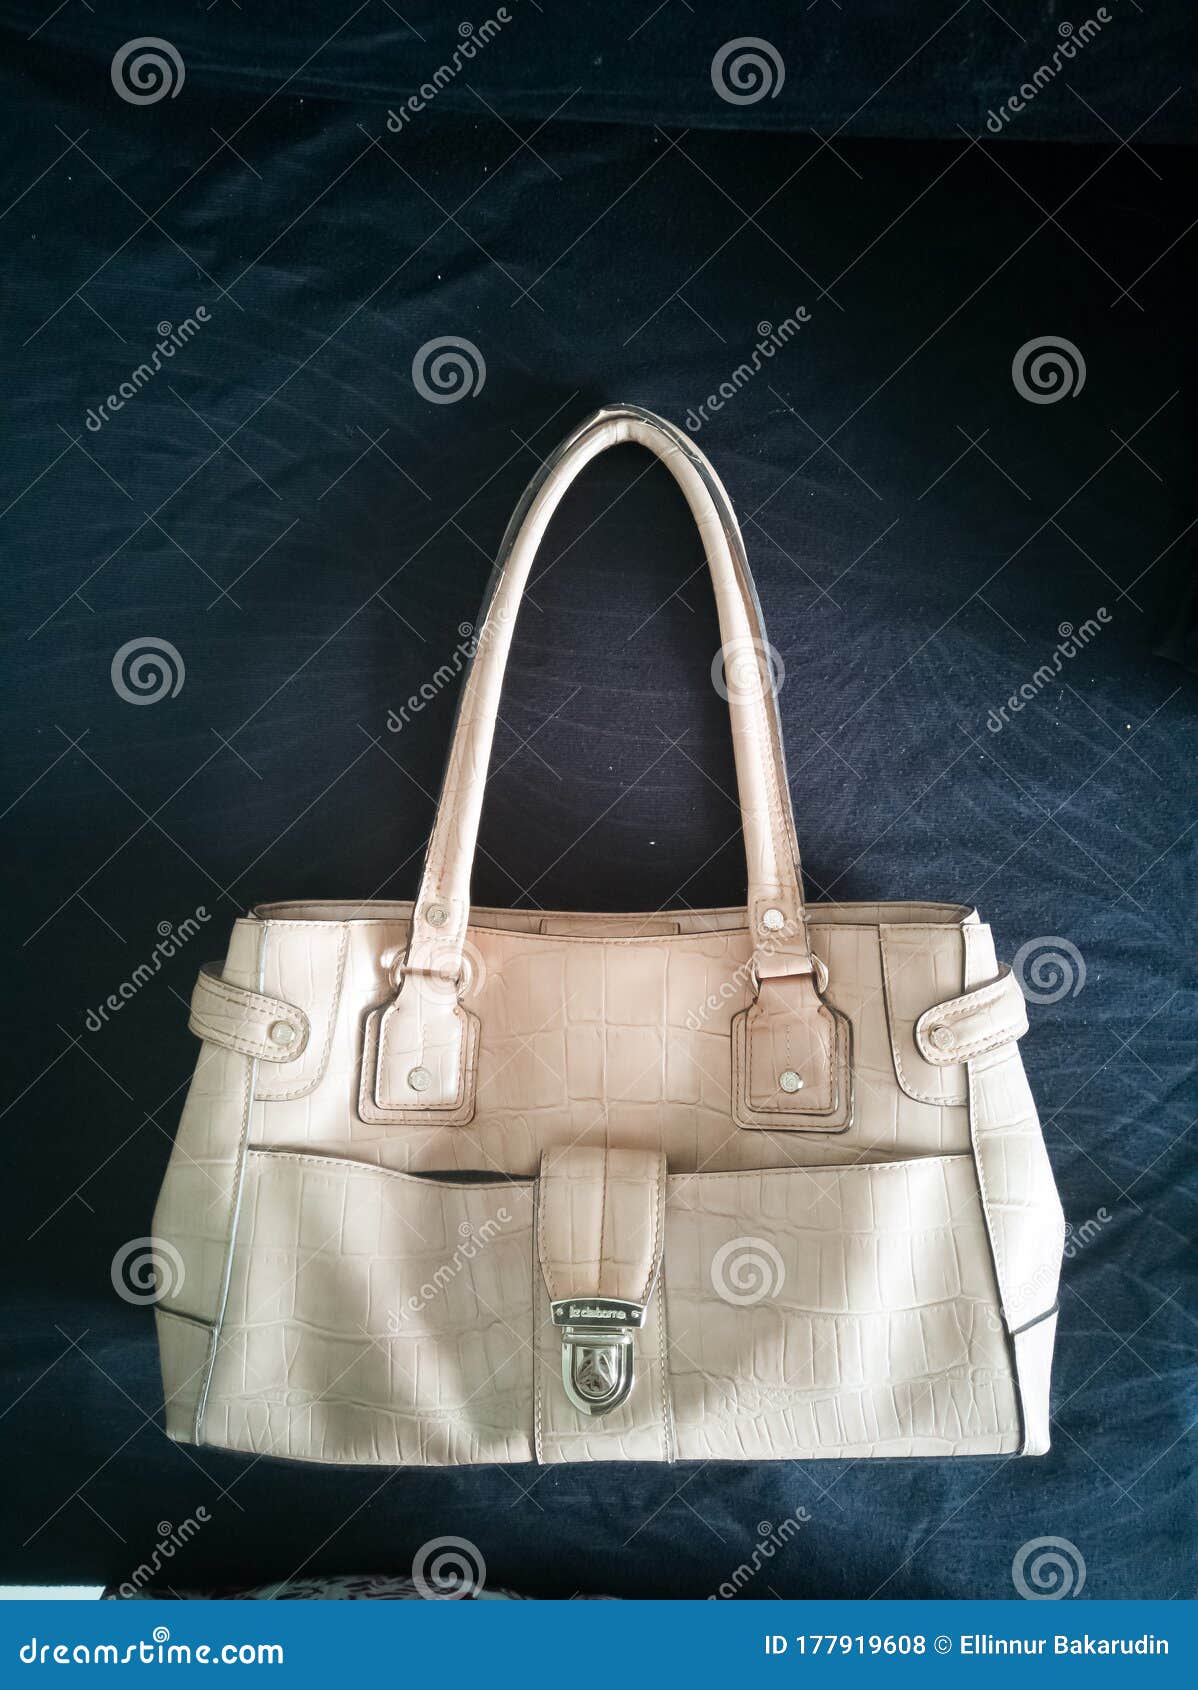 Liz Claiborne white purse  White purses, Liz claiborne, Purses